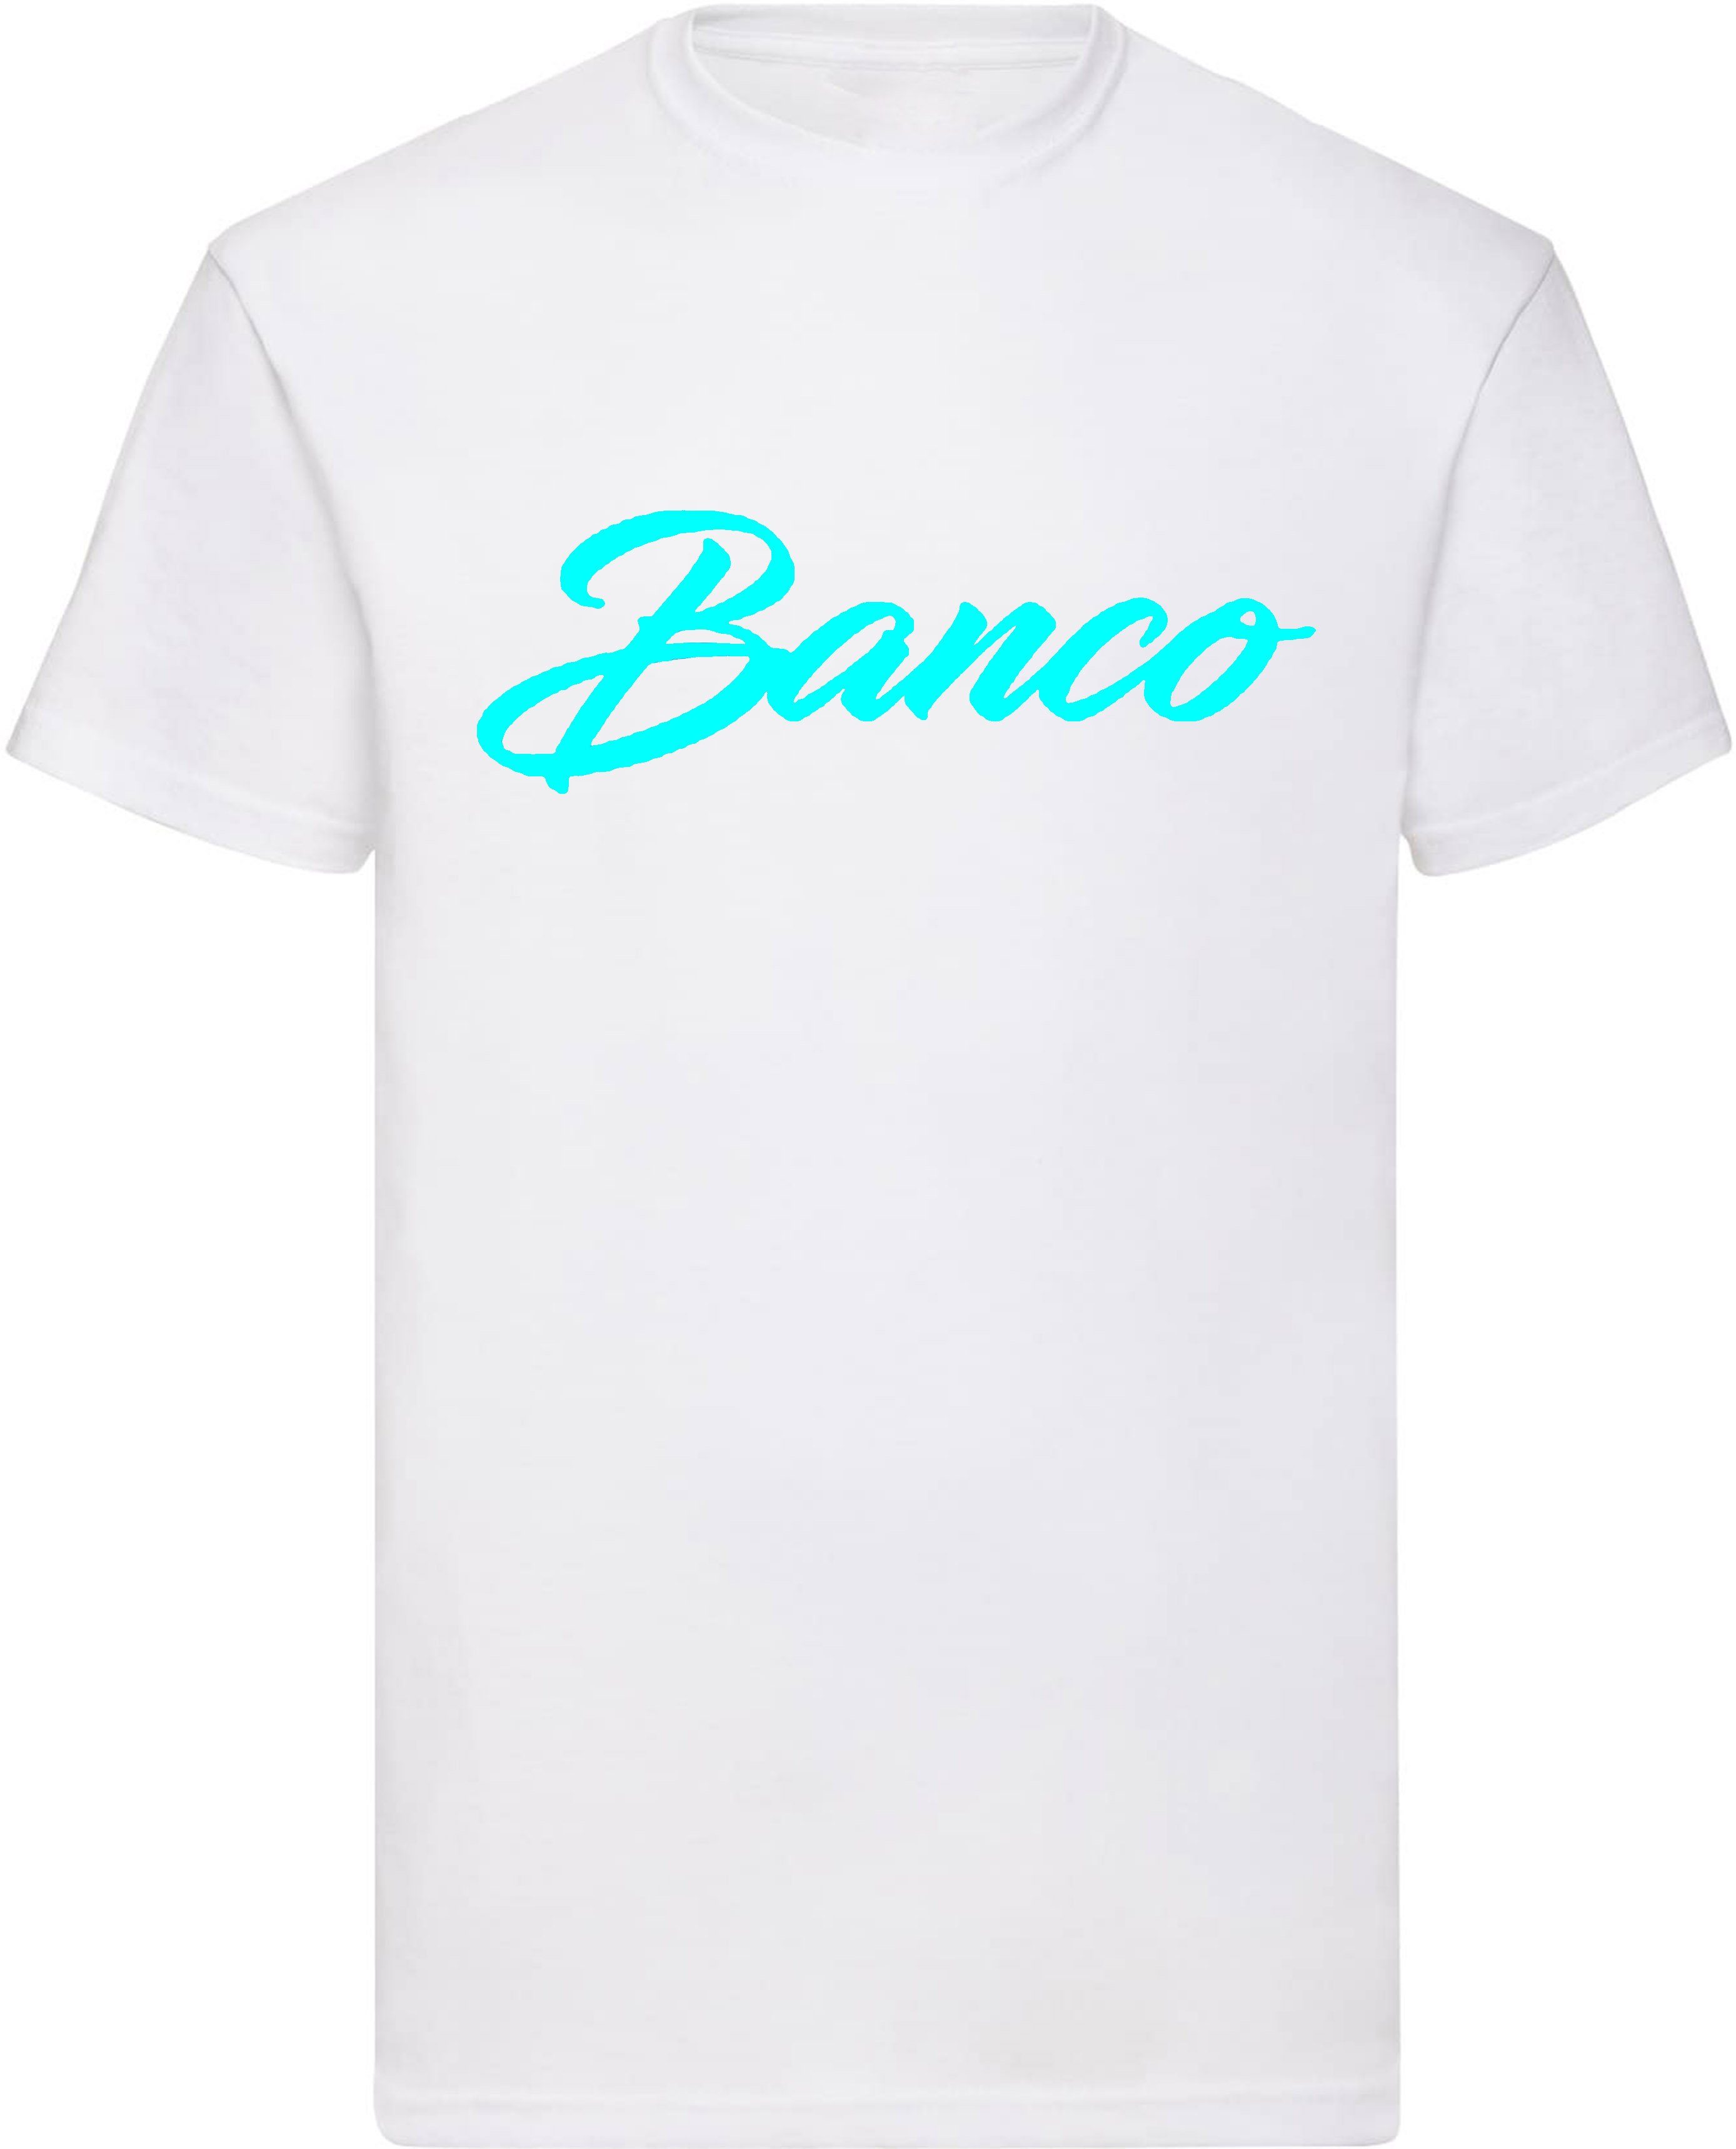 Freizeit Streetwear T-Shirt Rundhals Baumwolle Shirt Sport 100% Sommer Banco WeißTürkis Kurzarm